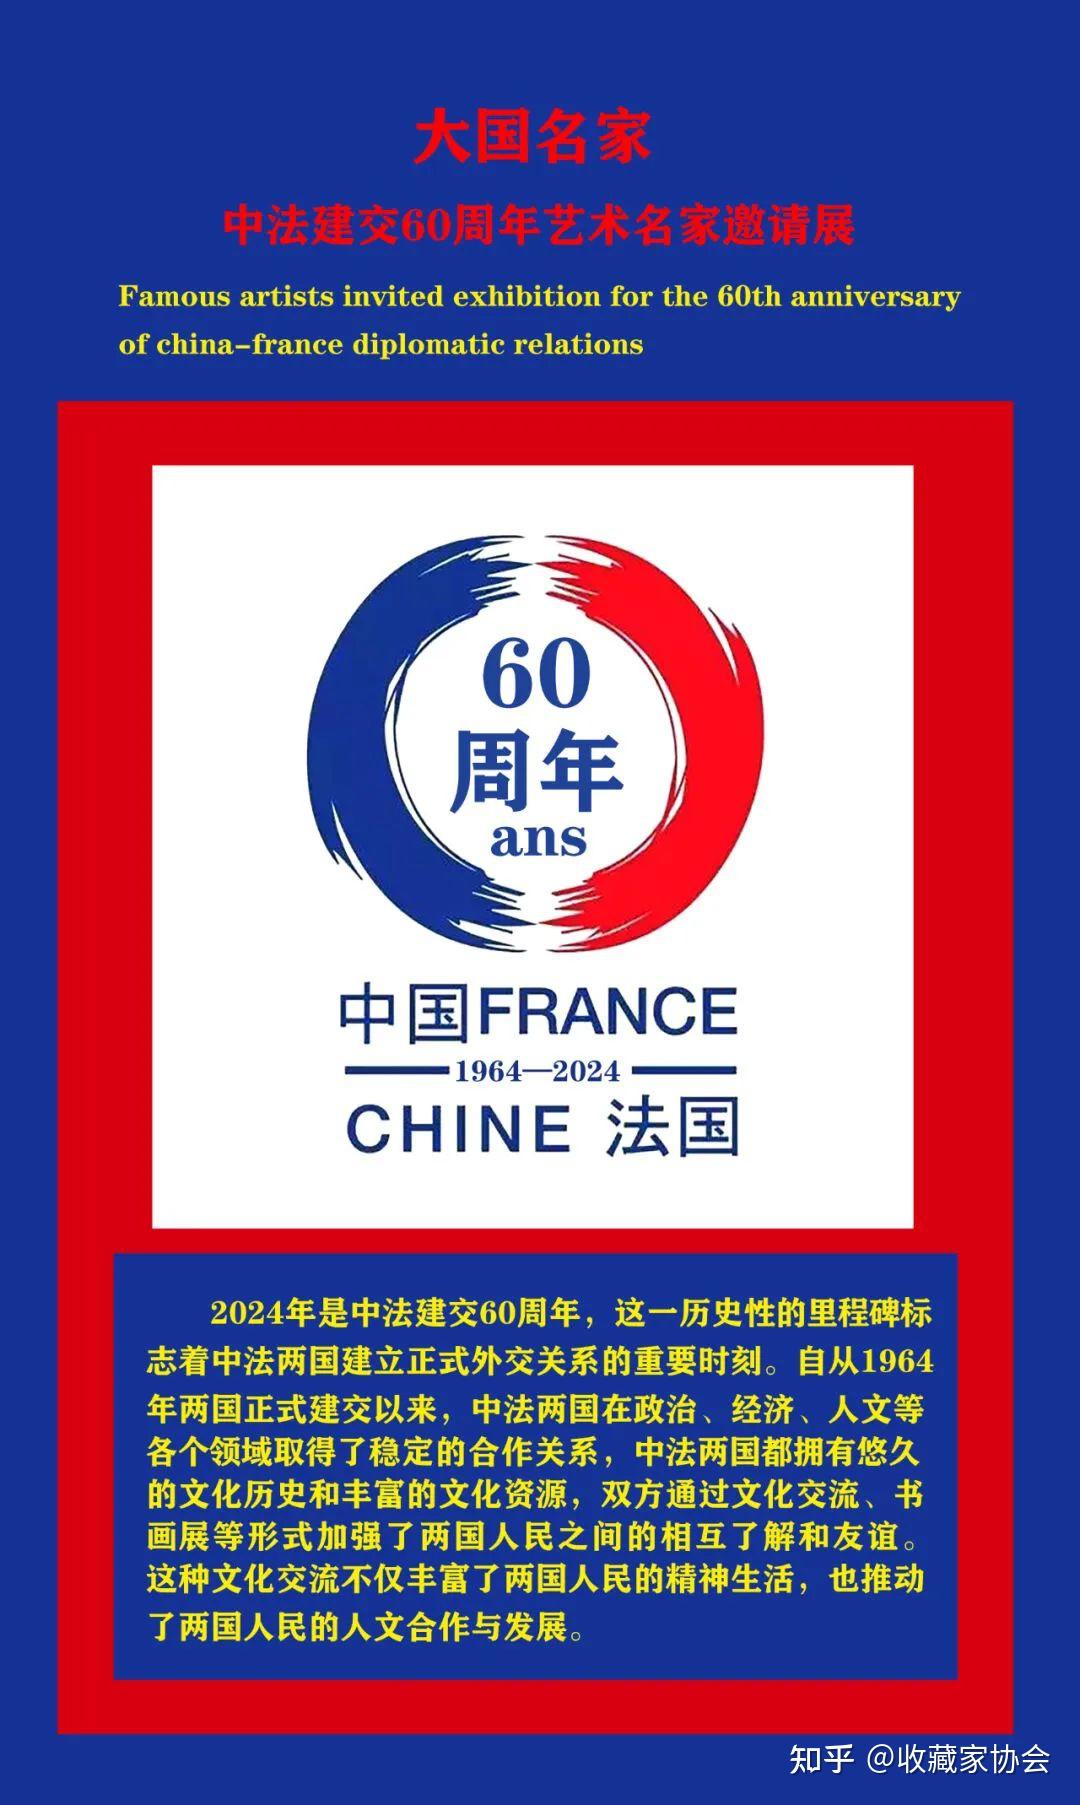 民间外交 – 美中建交40周年高峰论坛 – Florence Fang Family Foundation